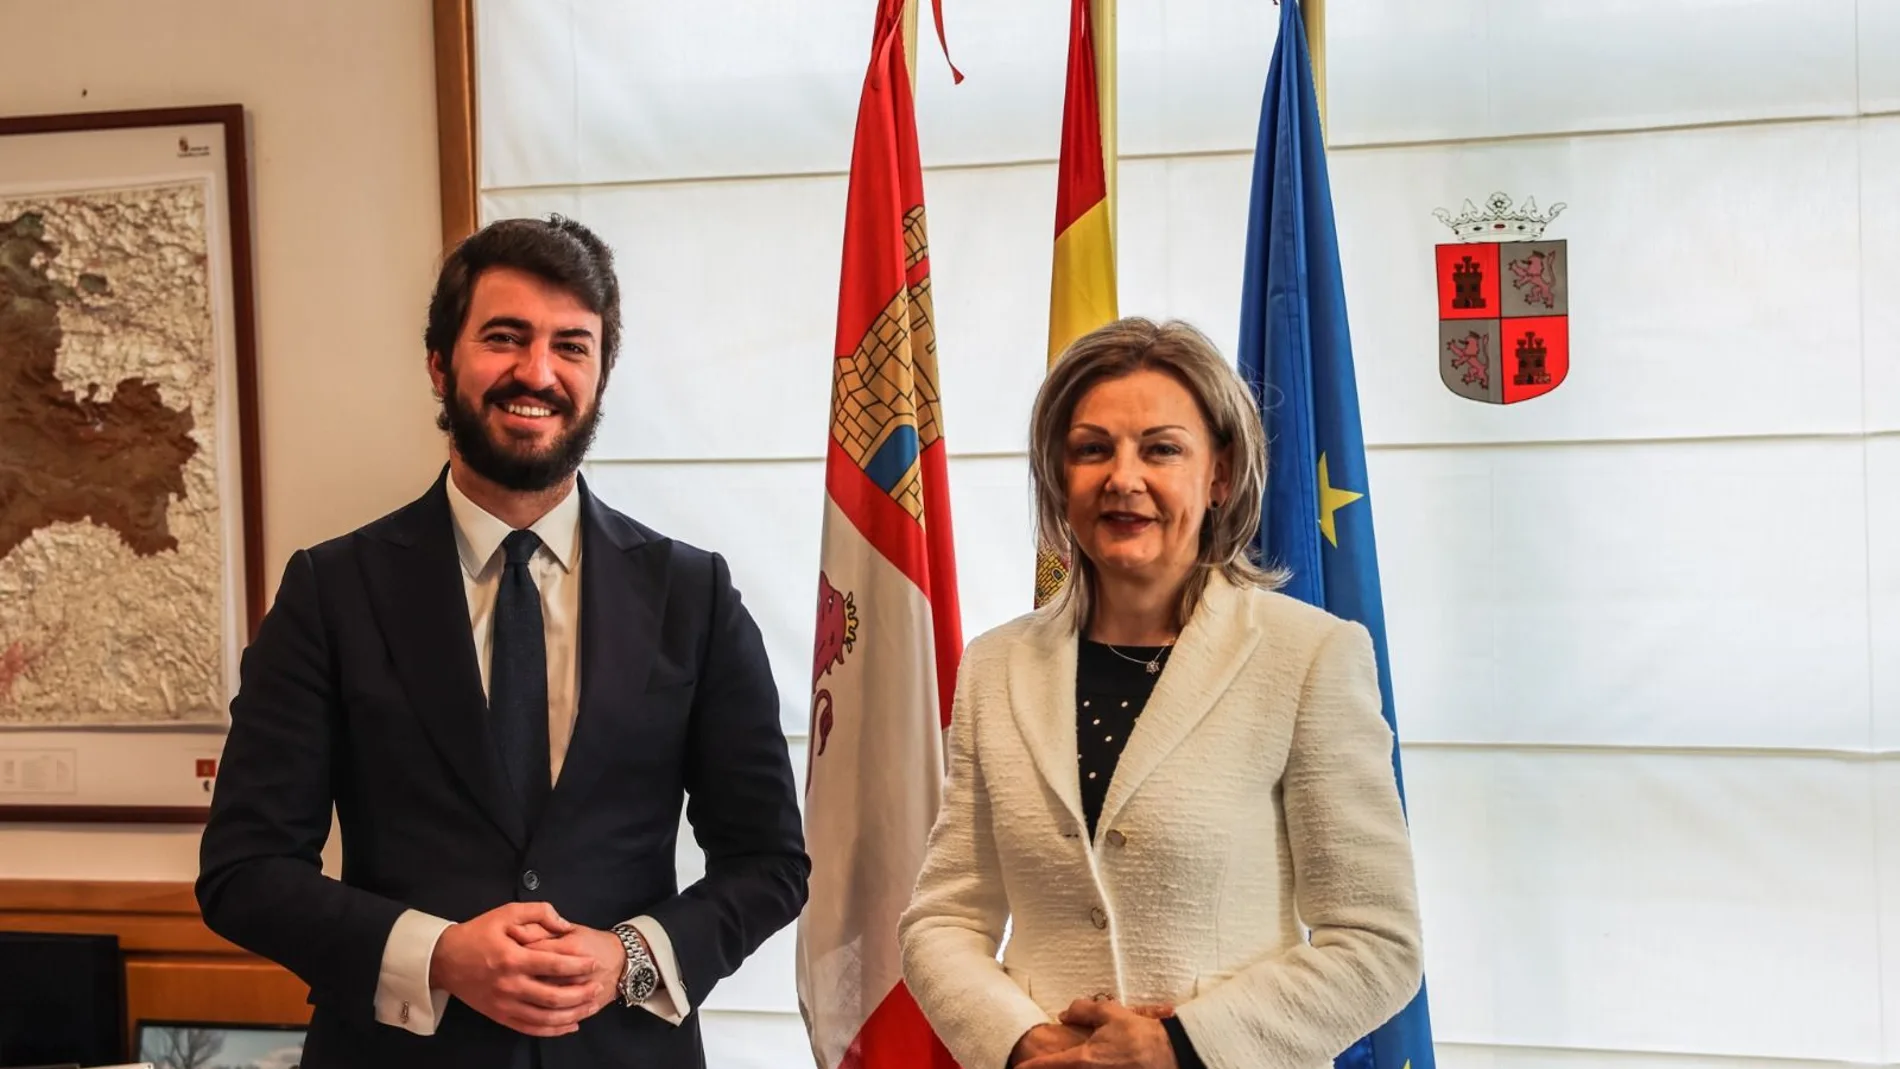 El vicepresidente ha recibido esta mañana a la embajadora de Hungría en España, Katalin Tóth, con quien ha podido despachar distintos asuntos de colaboración, sobre todo de tipo empresarial